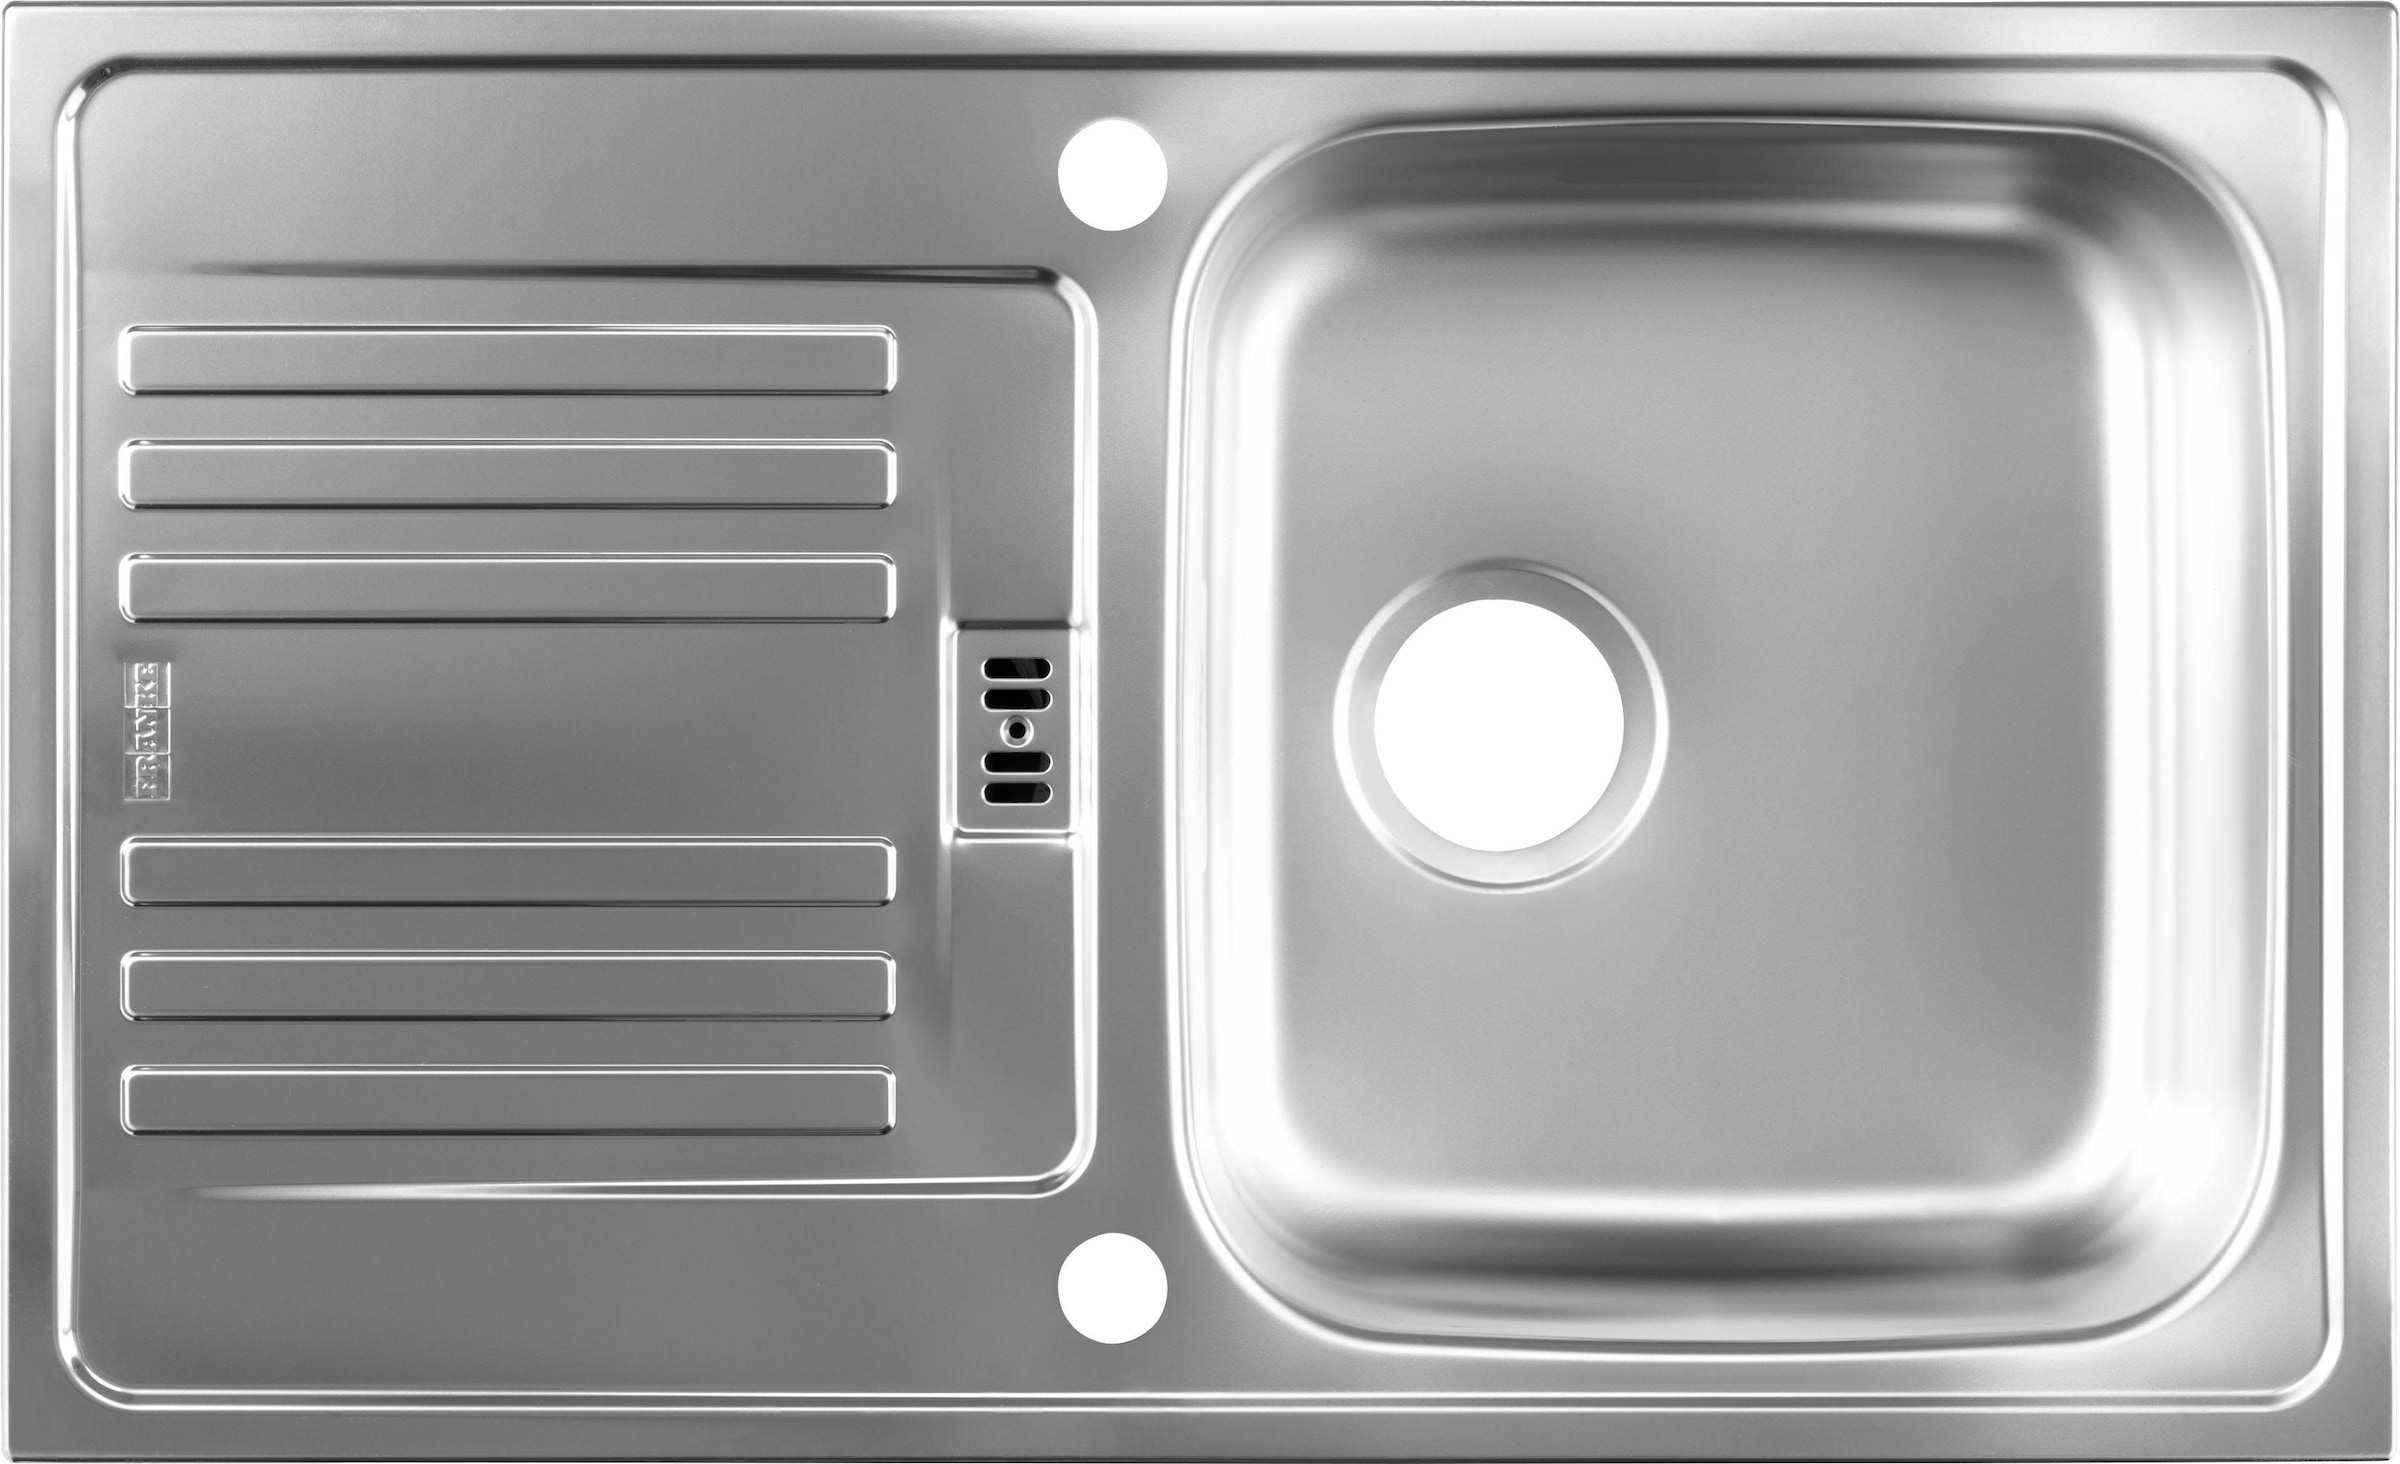 HELD MÖBEL Küchenzeile »Kehl«, mit E-Geräten, Breite 330 cm, inkl. Kühlschrank